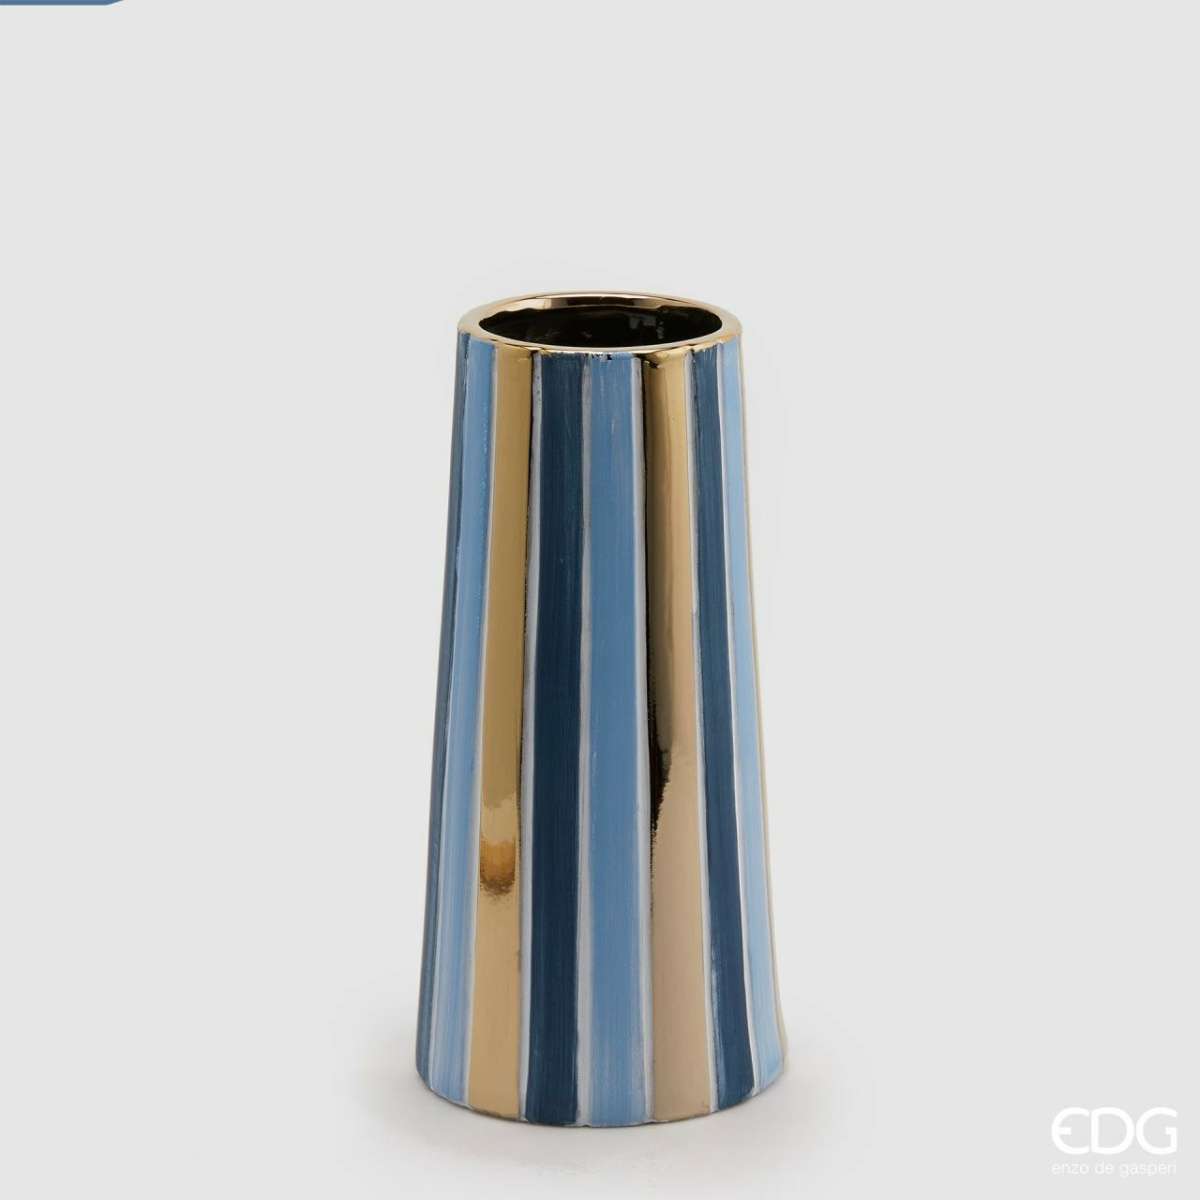 Immagine del prodotto Vaso Righe Bicolor Oro/Azzurro in Ceramica (2 Misure) | EDG Enzo De Gasperi